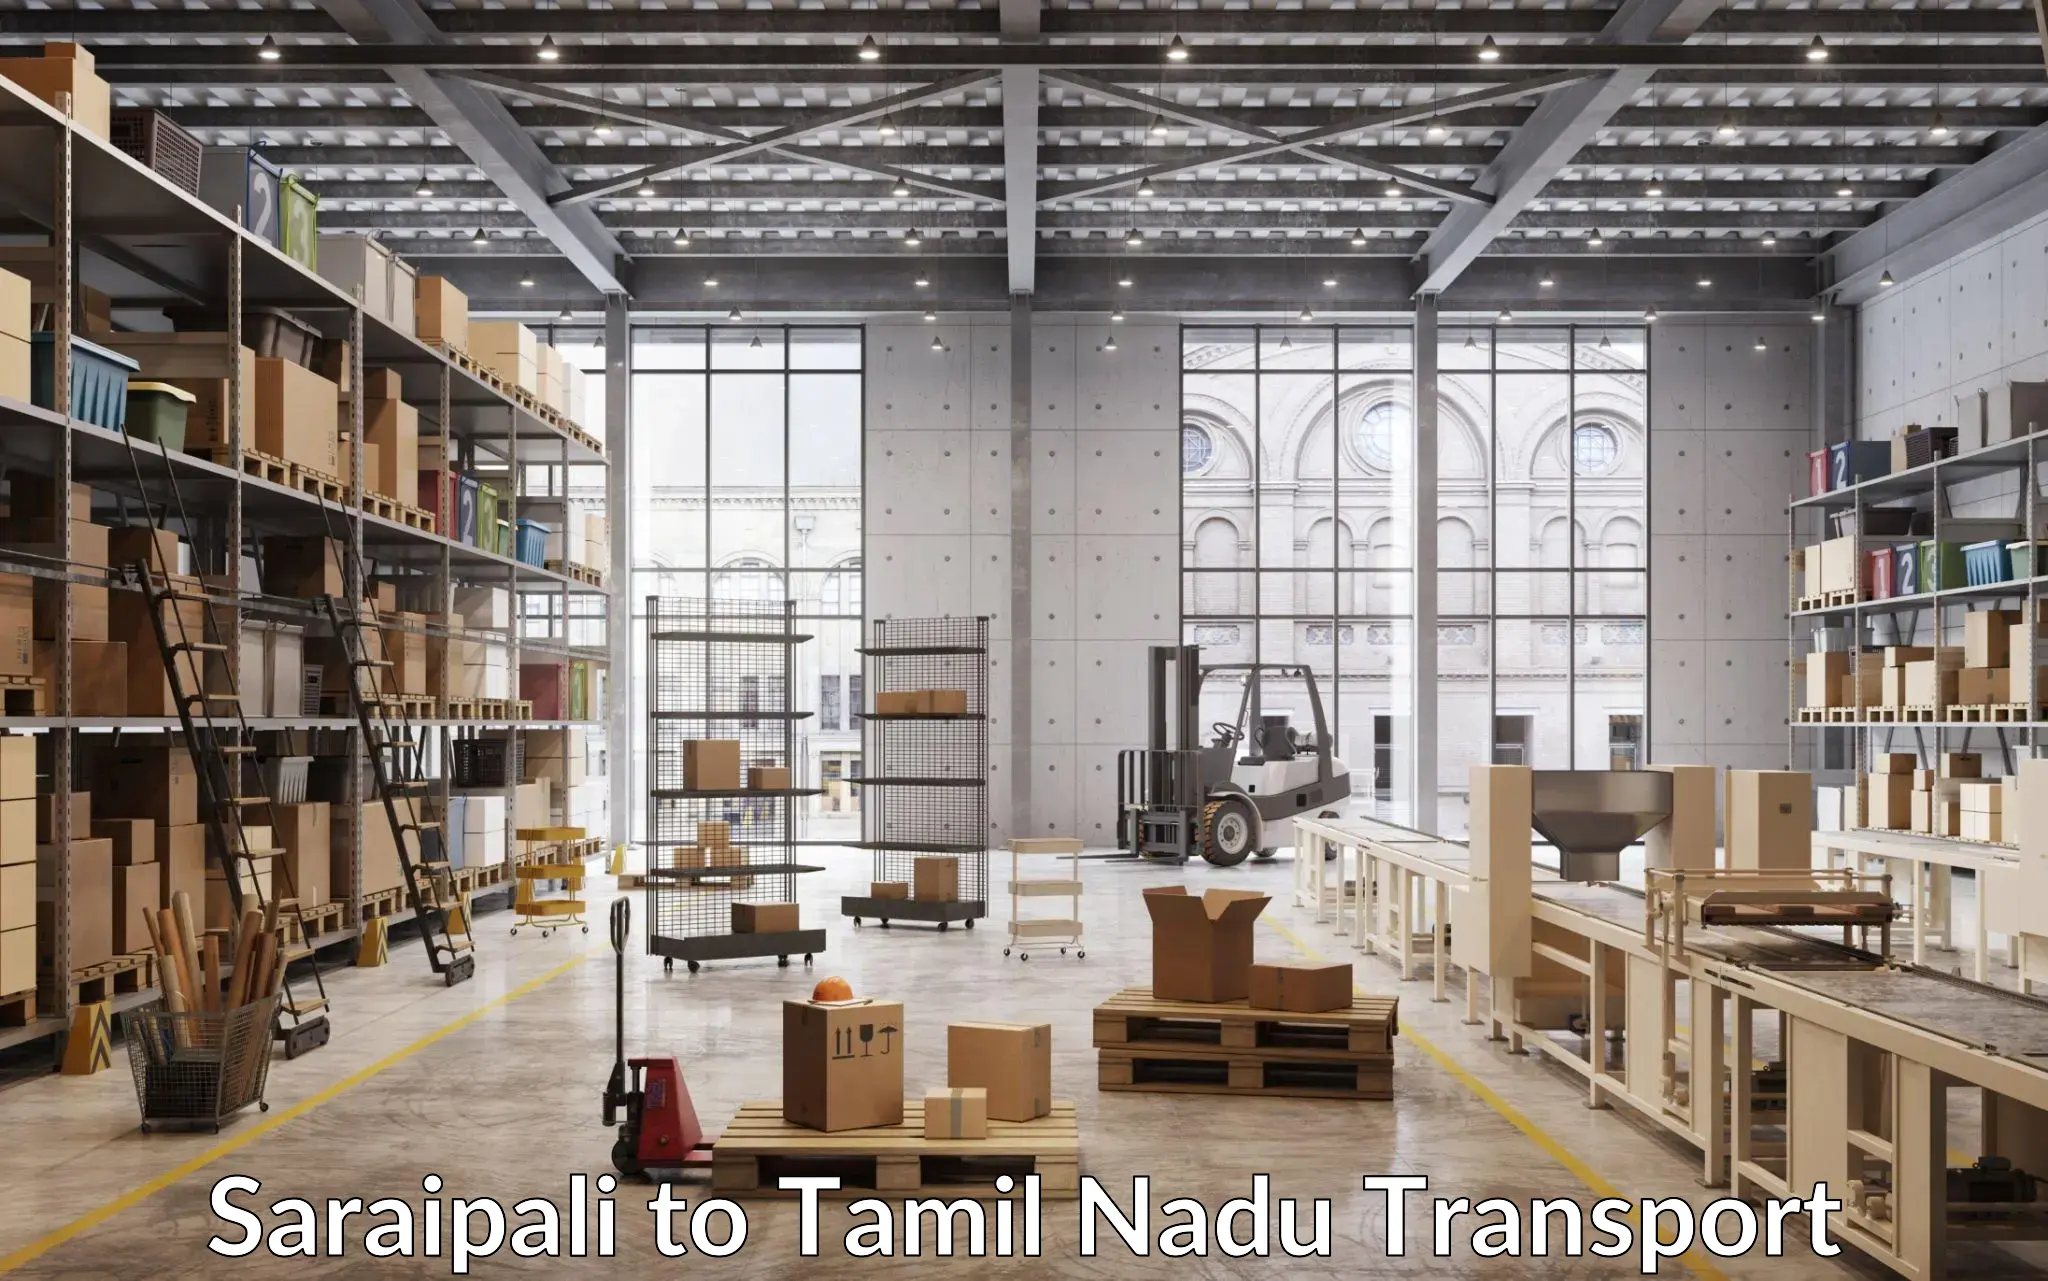 Truck transport companies in India Saraipali to Tamil Nadu